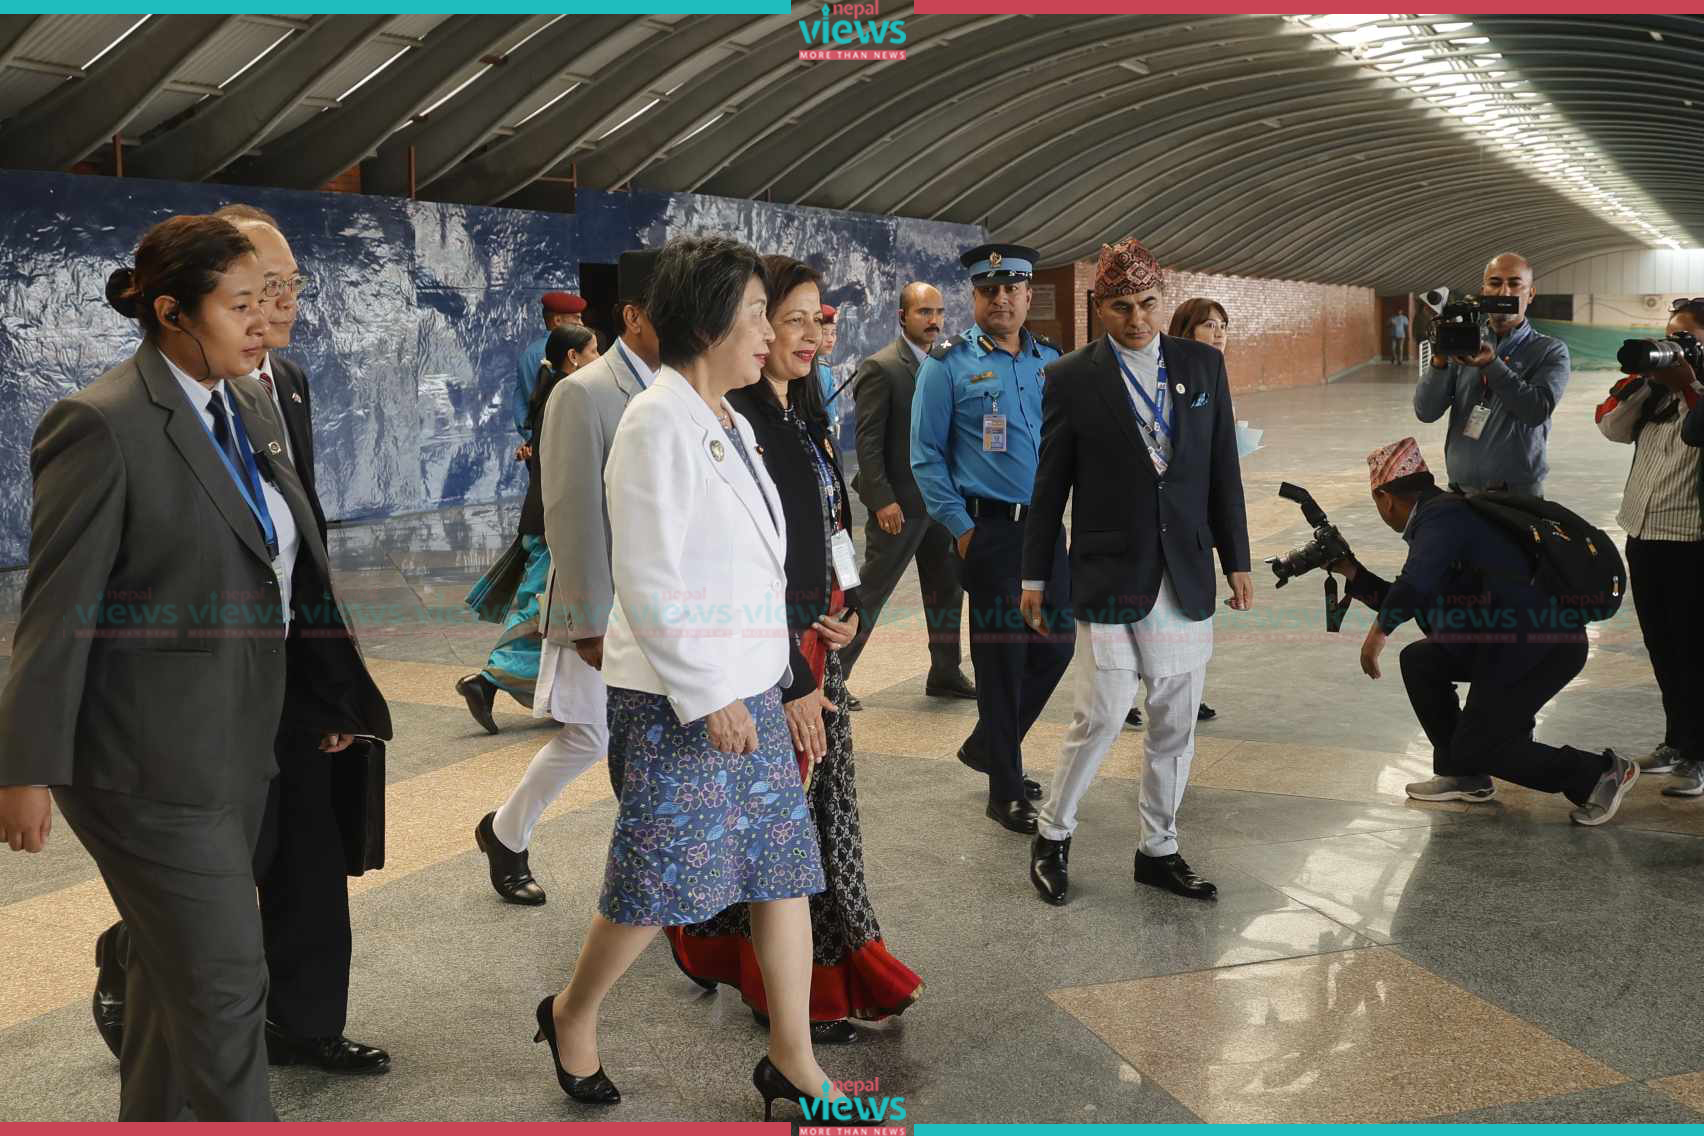 एकदिनका लागि काठमाडौं ओर्लिएकी जापानी विदेशमन्त्री योको स्वदेश फिर्ता